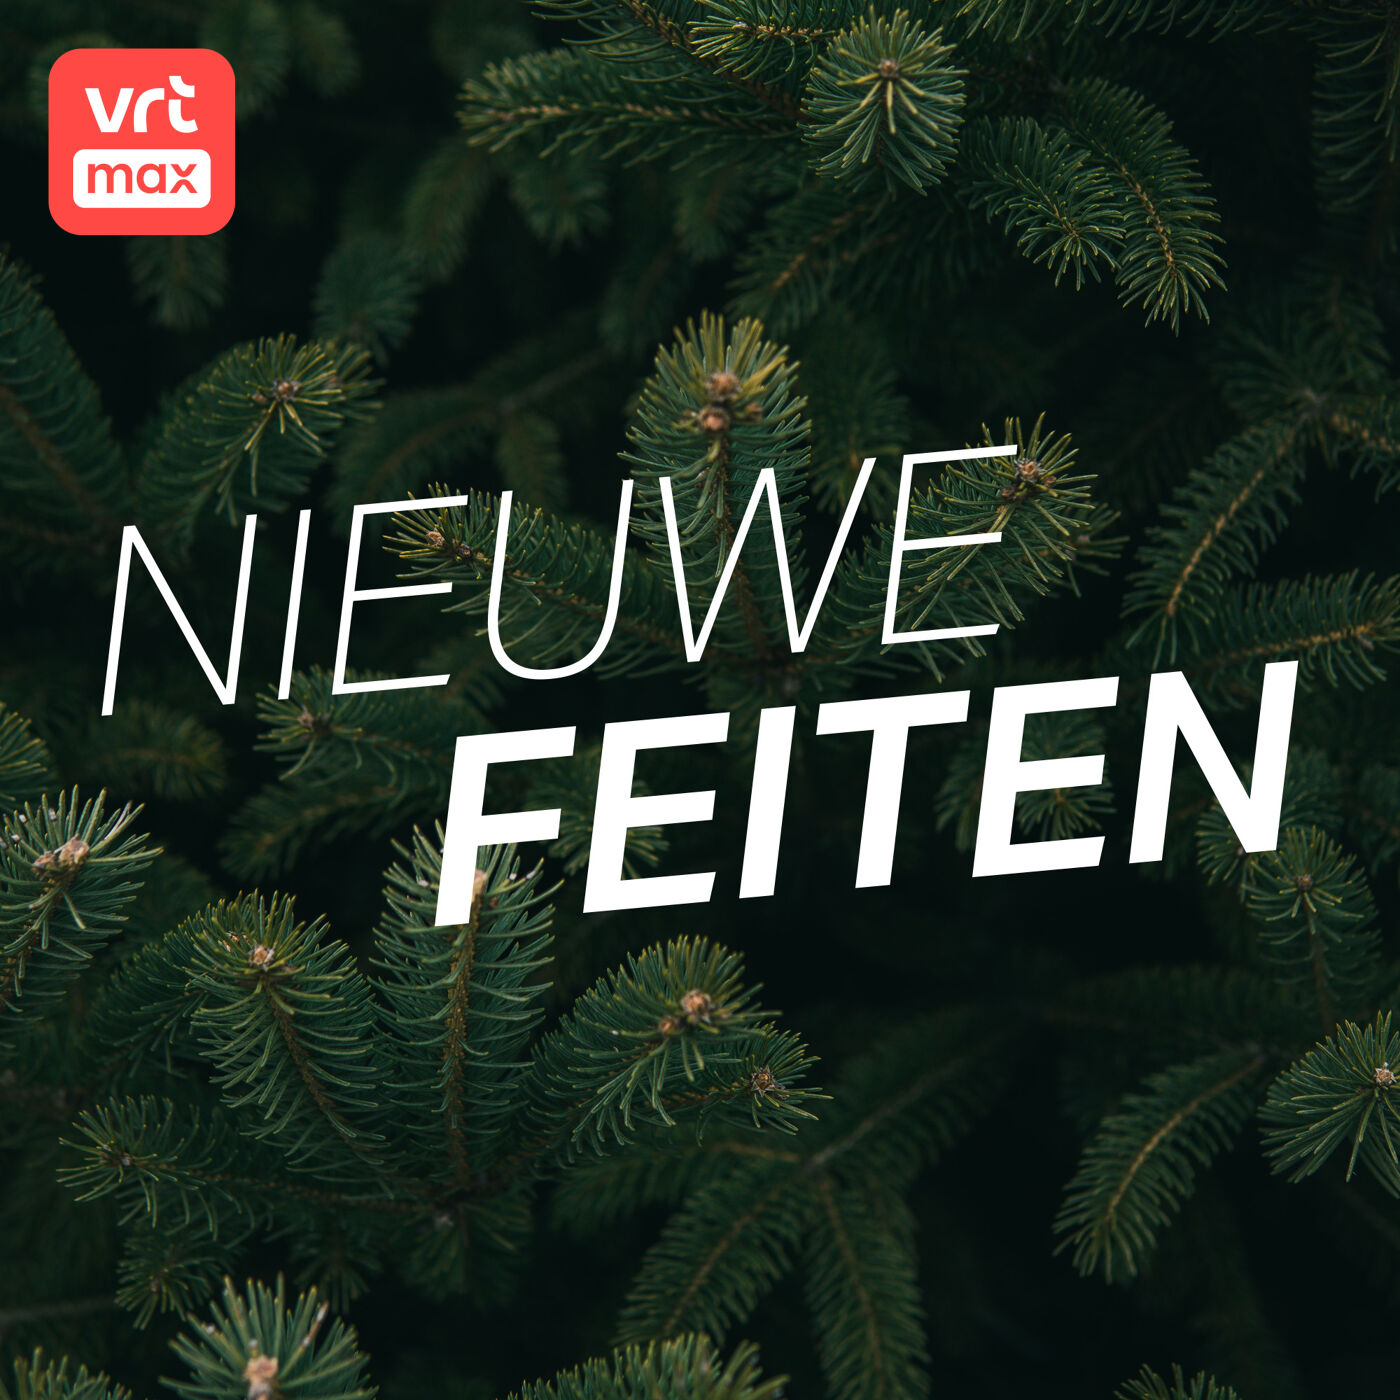 Leverancier Oudenaardse kerstboom reageert